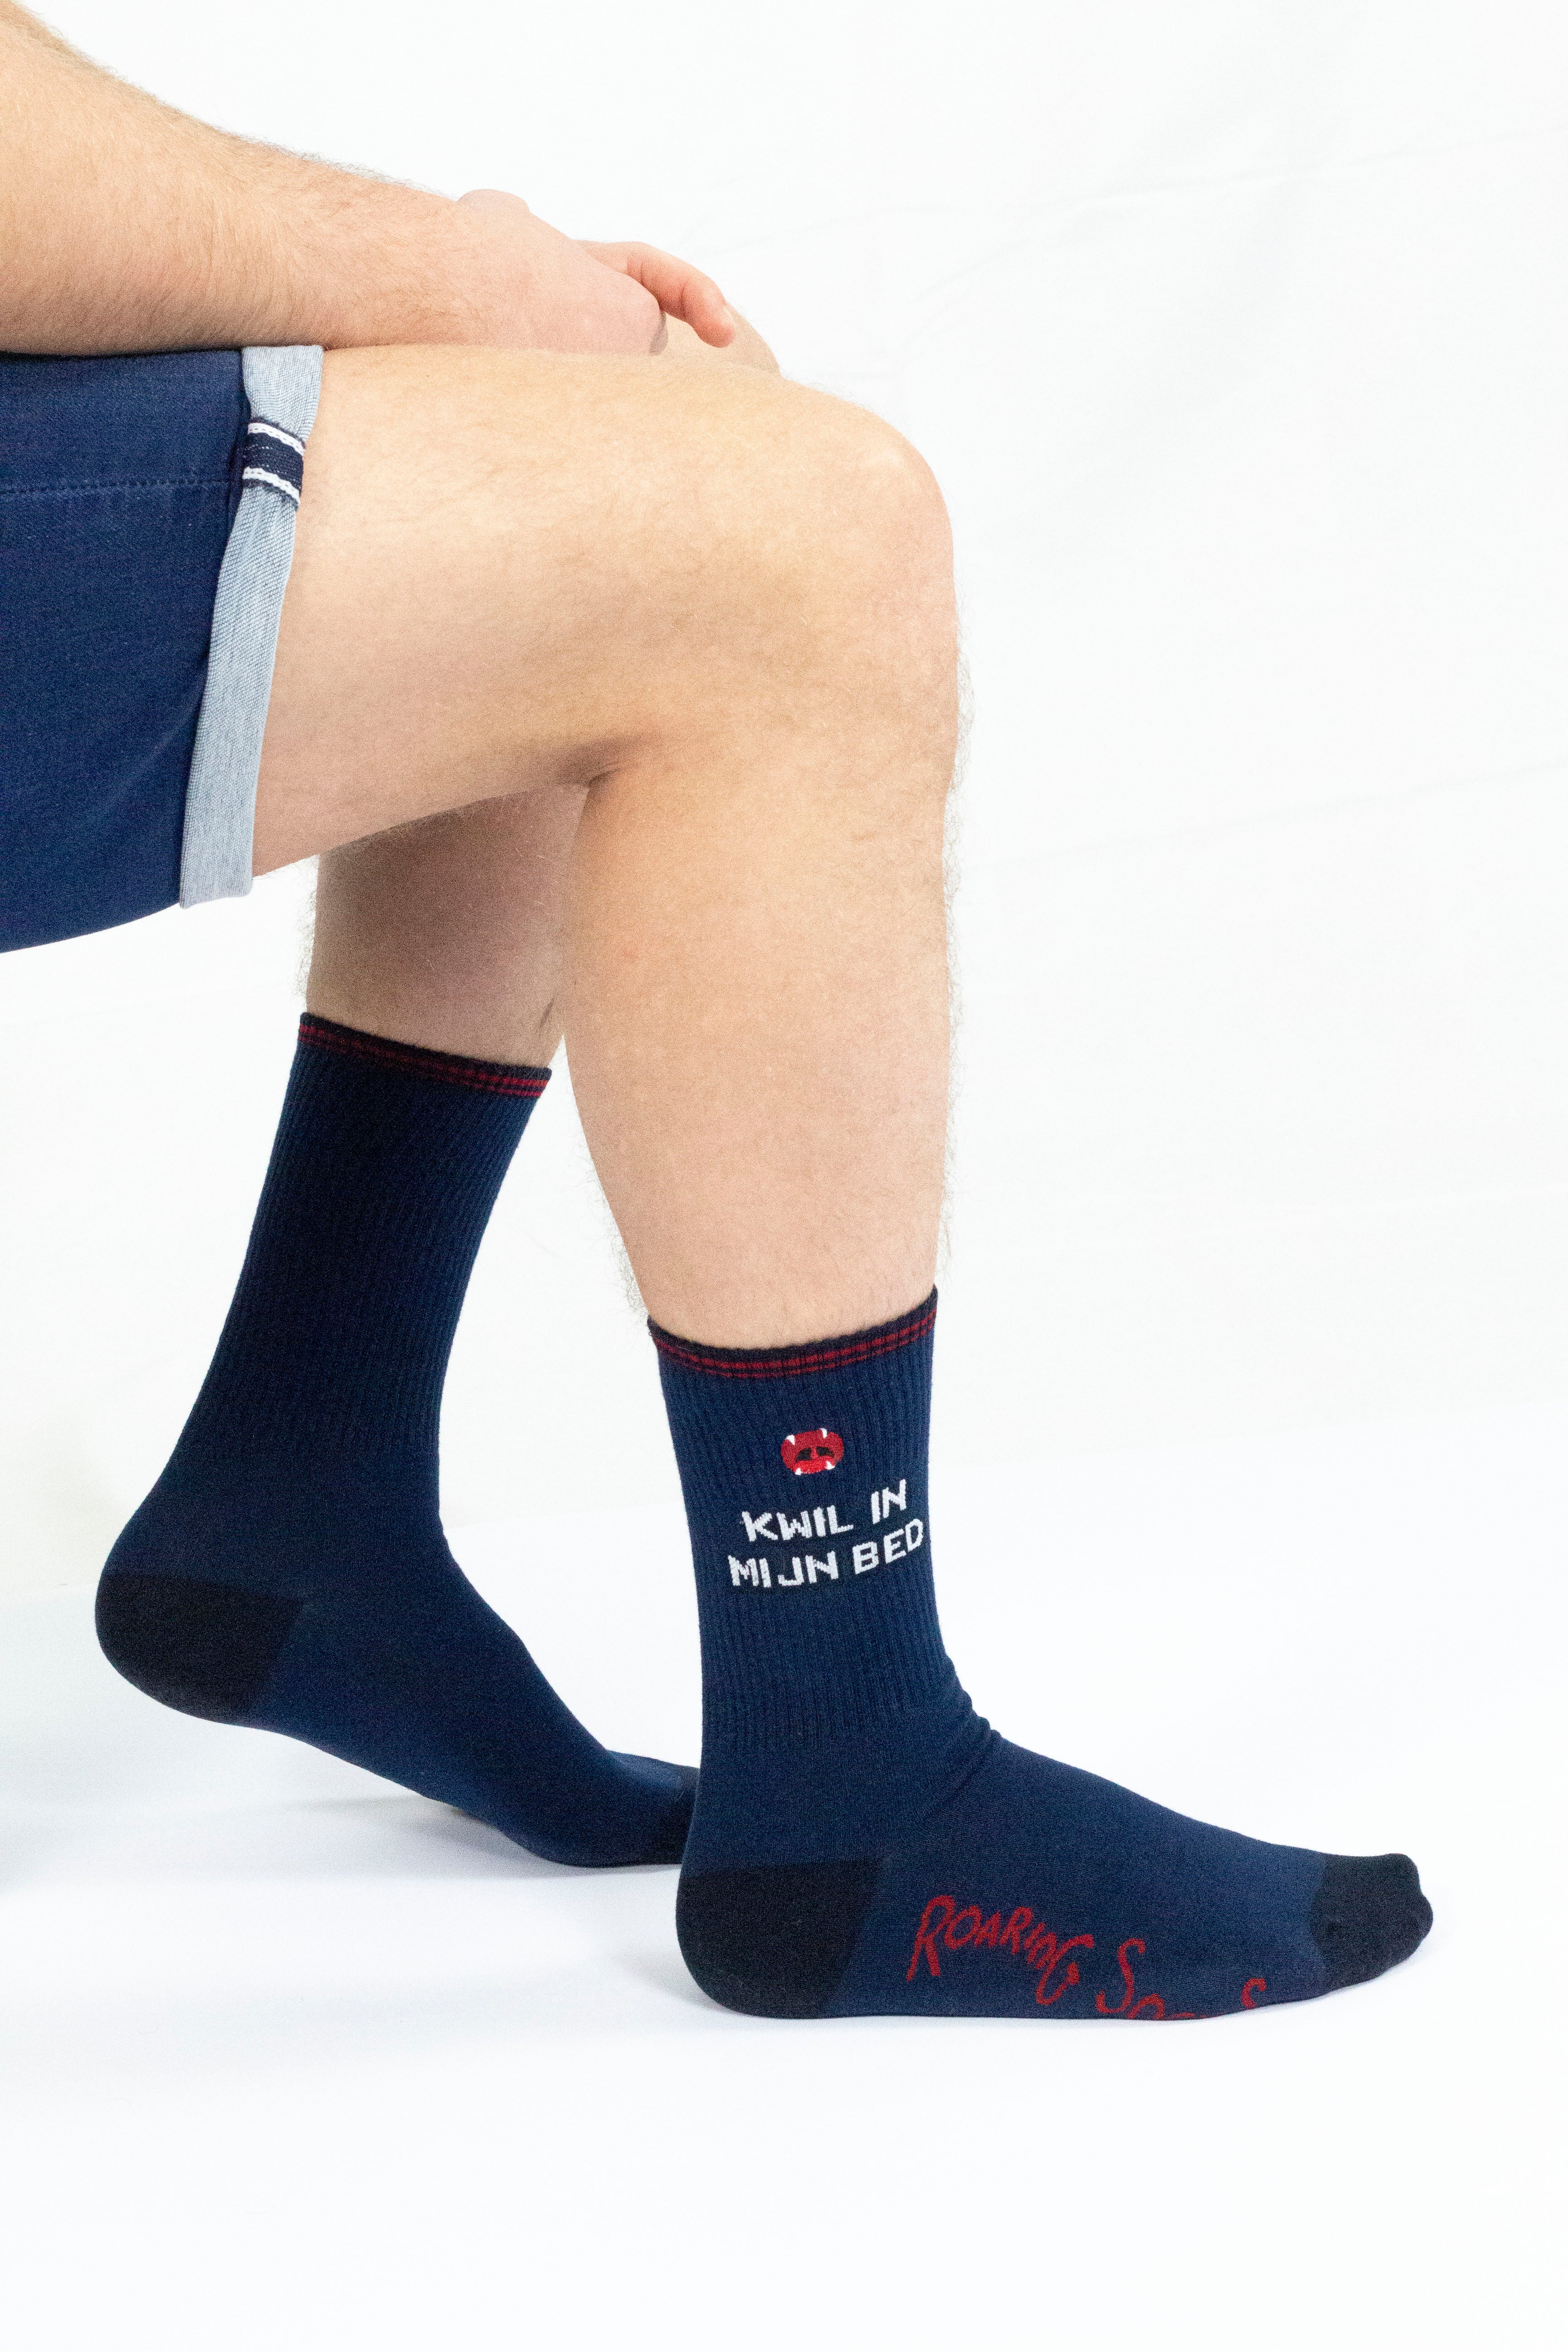 Roaring Socks – Sport Sokken - Kwil in mijn bed - donker blauw - Katoen - Leuk - Grappig - Vrolijk - Fashion – Cadeau - Slapen